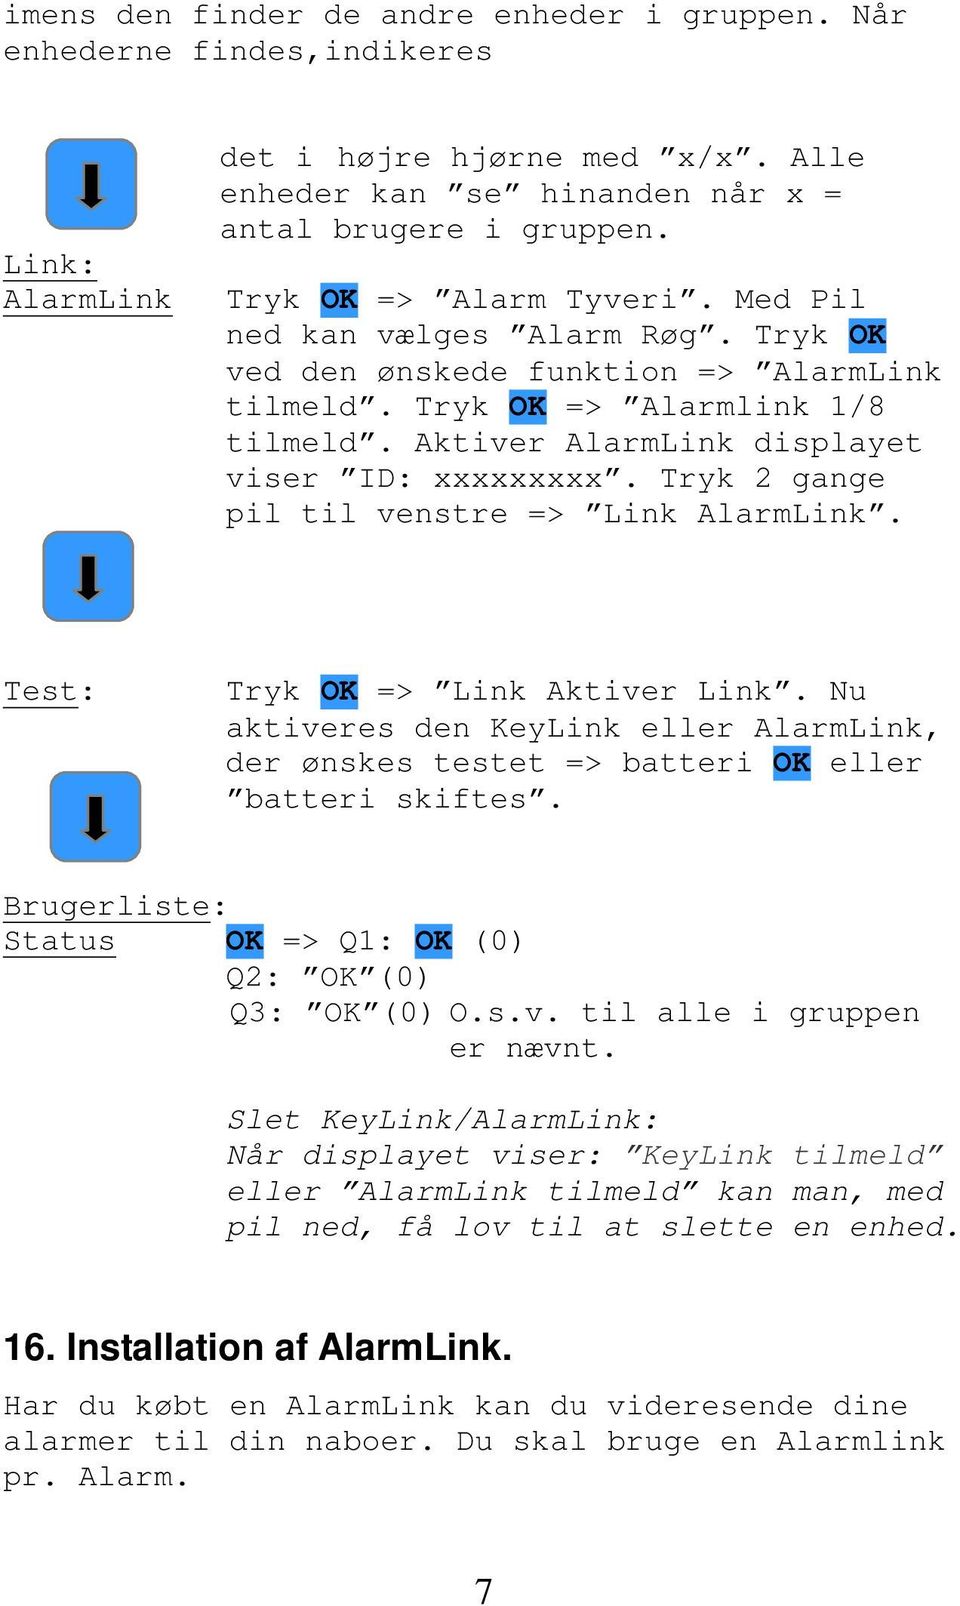 Aktiver AlarmLink displayet viser ID: xxxxxxxxx. Tryk 2 gange pil til venstre => Link AlarmLink. Test: Tryk OK => Link Aktiver Link.